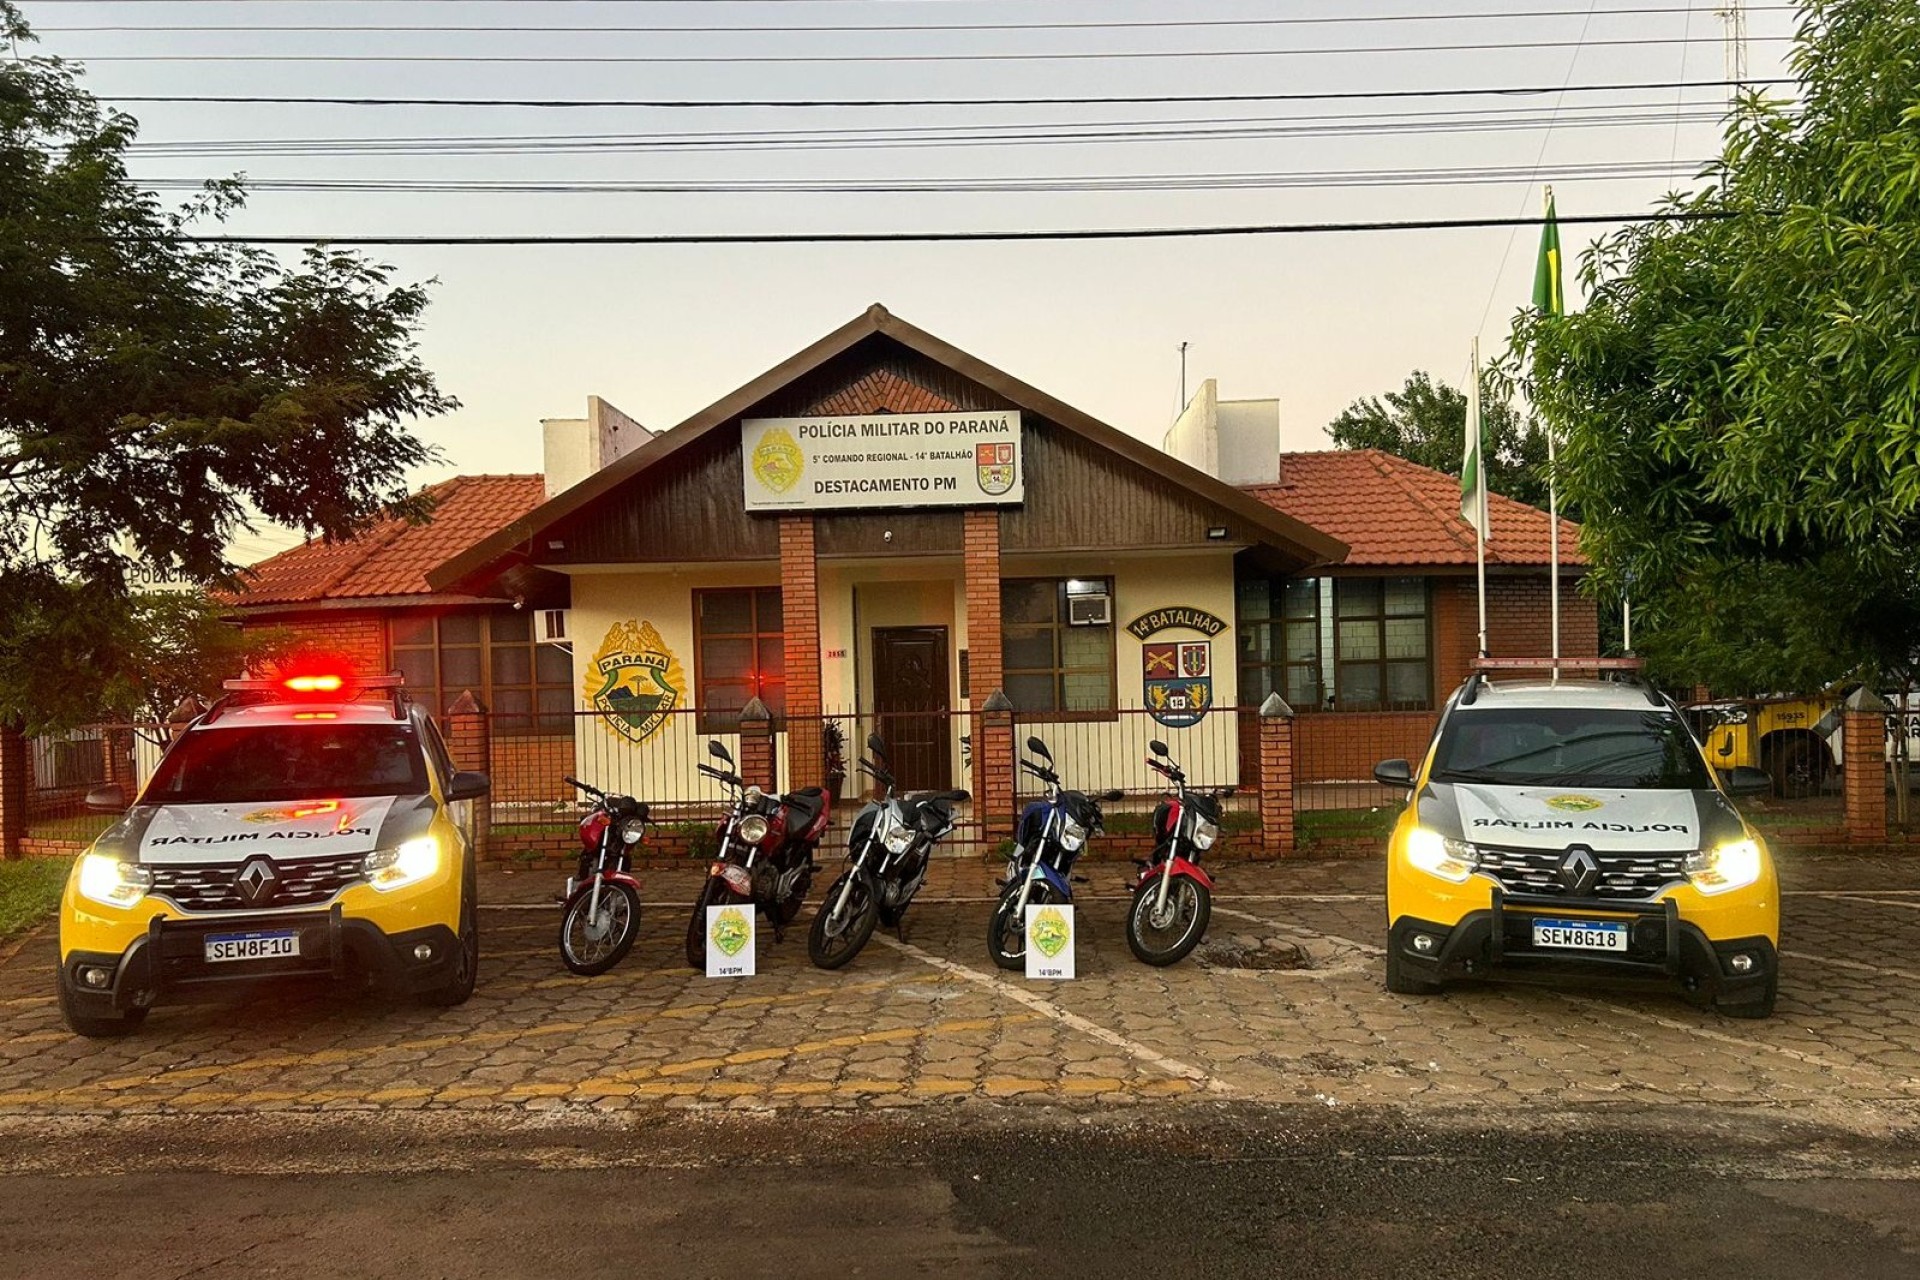 Polícia Militar de Missal e Itaipulândia apreende 05 motocicletas na Operação “No Grau/Base Náutica”